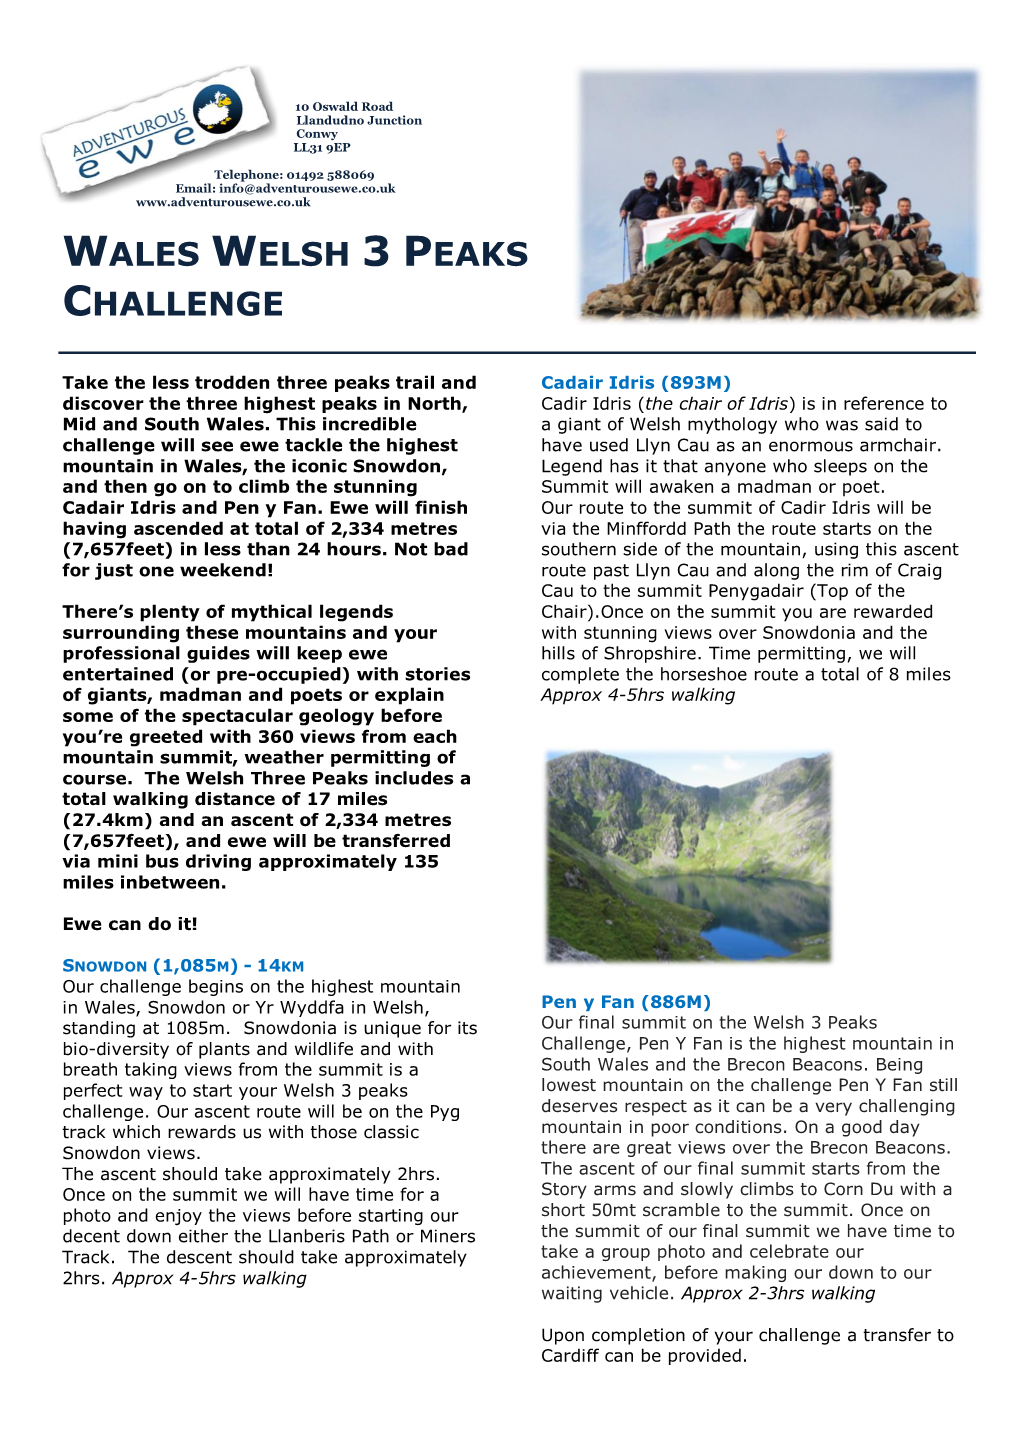 Wales Welsh 3 Peaks Challenge